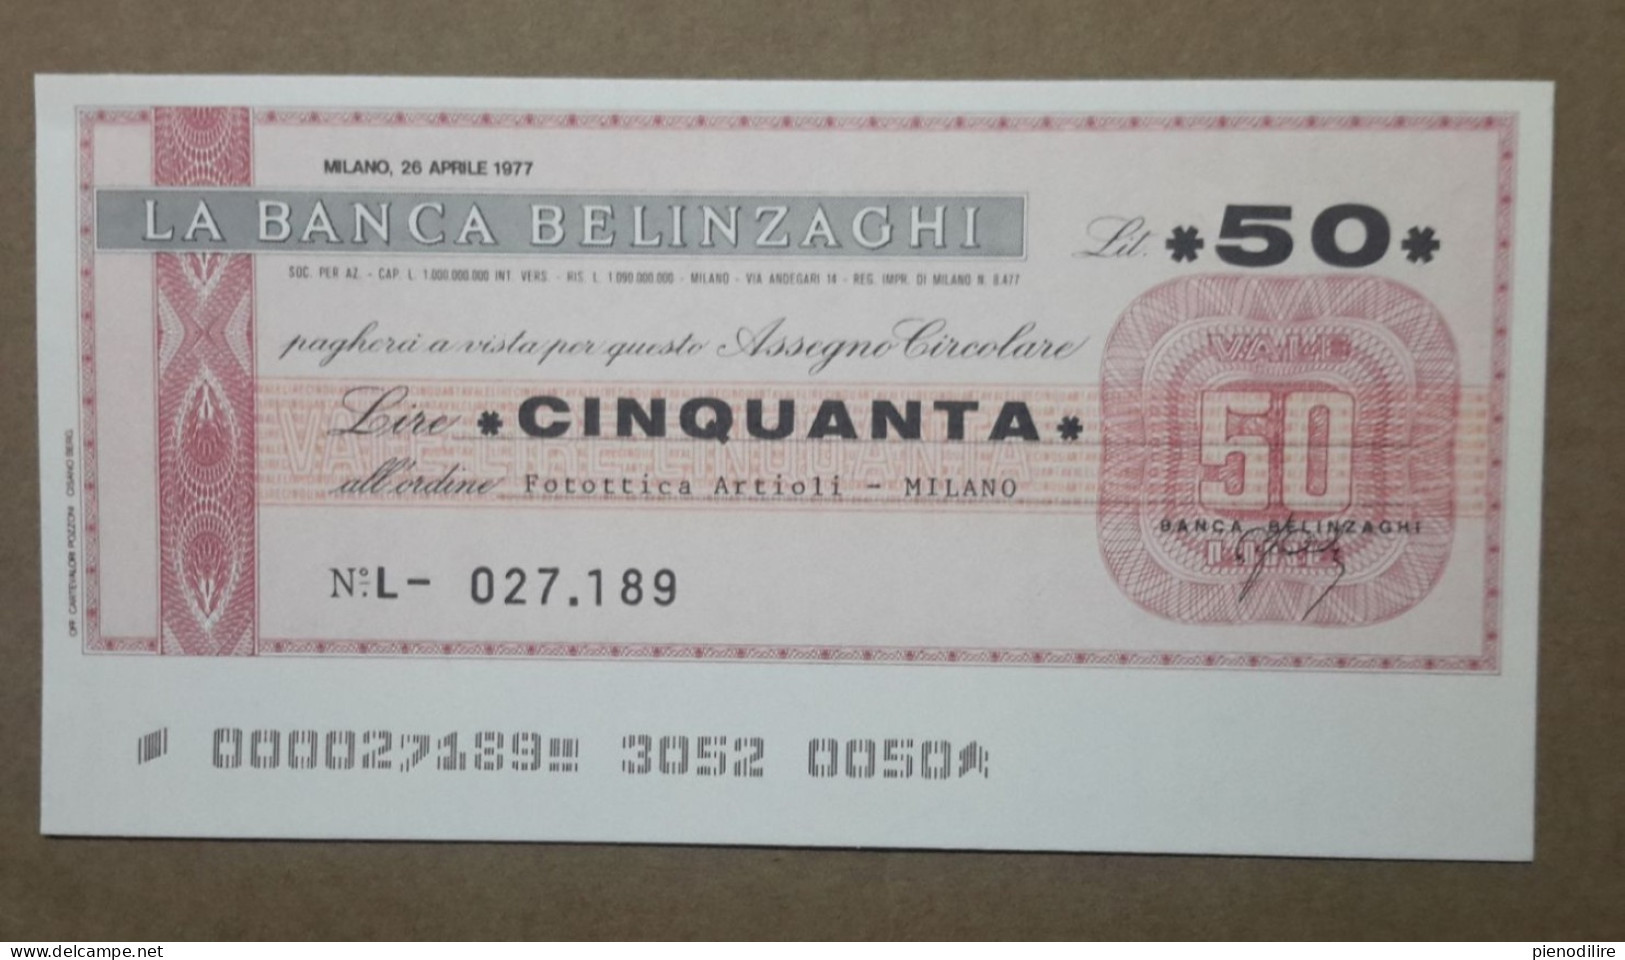 BANCA BELINZAGHI, 50 LIRE 26.04.1977 FOTOTTICA ARTIOLI MILANO (A1.80) - [10] Cheques Y Mini-cheques